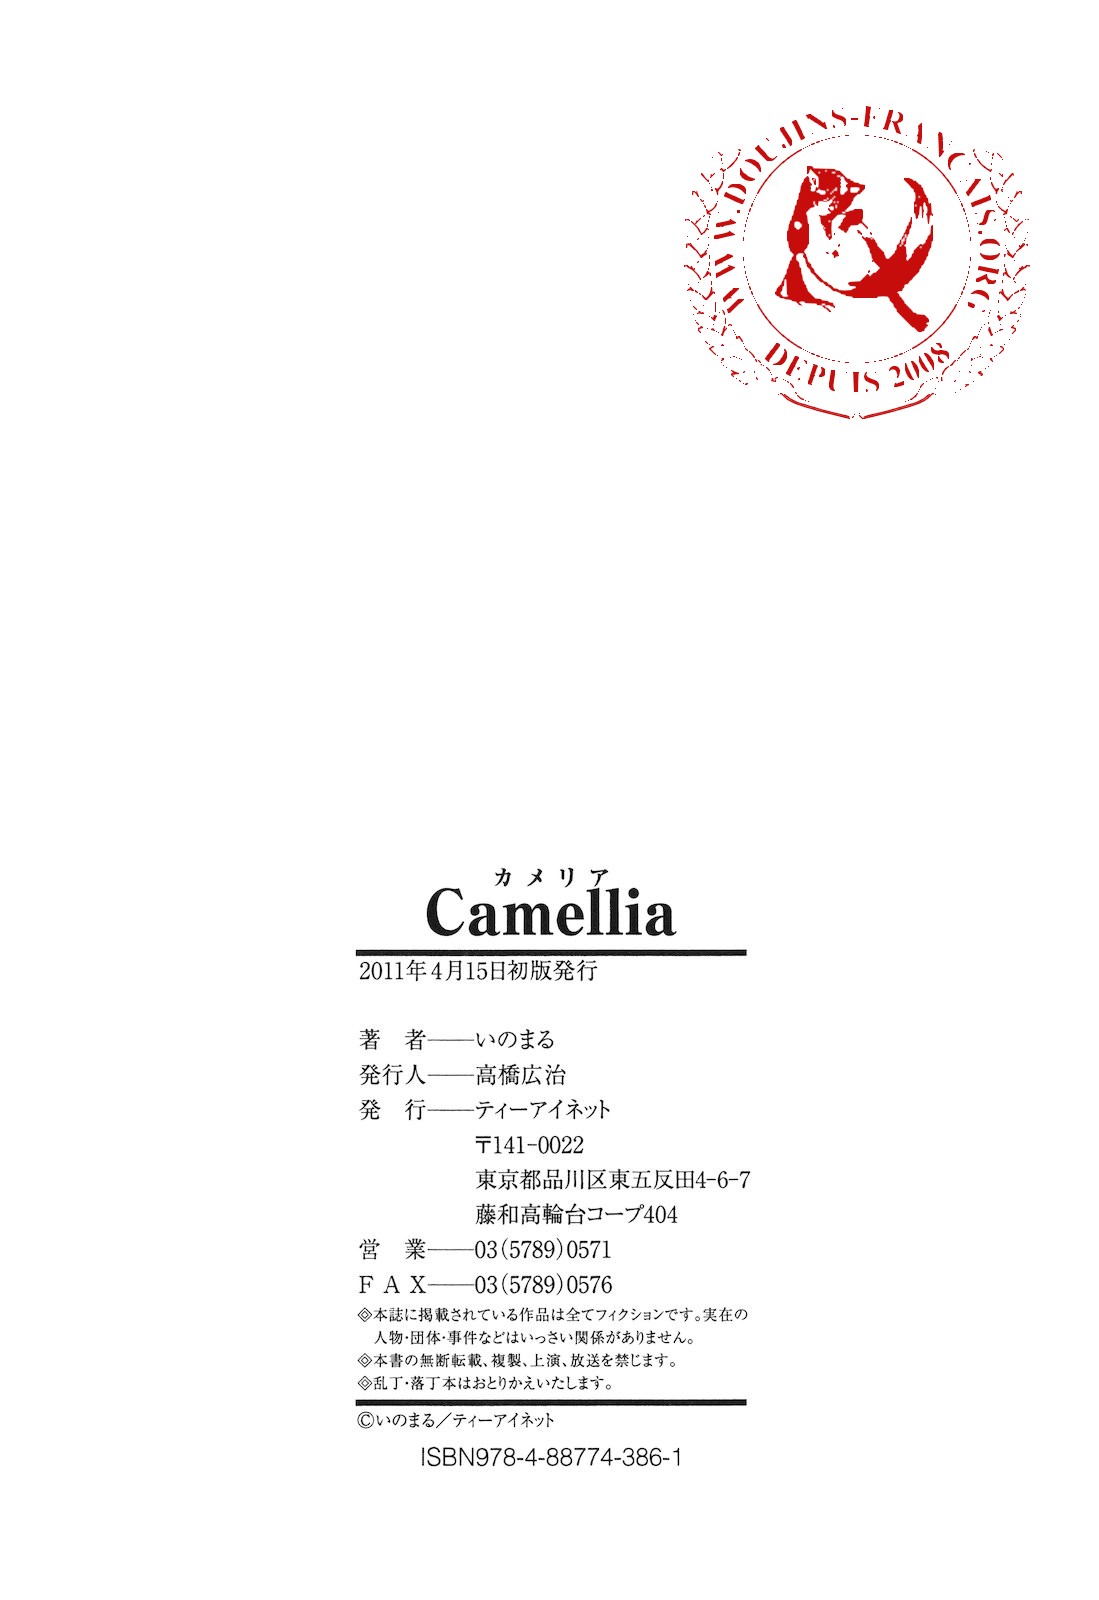 Camellia Ch. 4-7 numero d'image 112